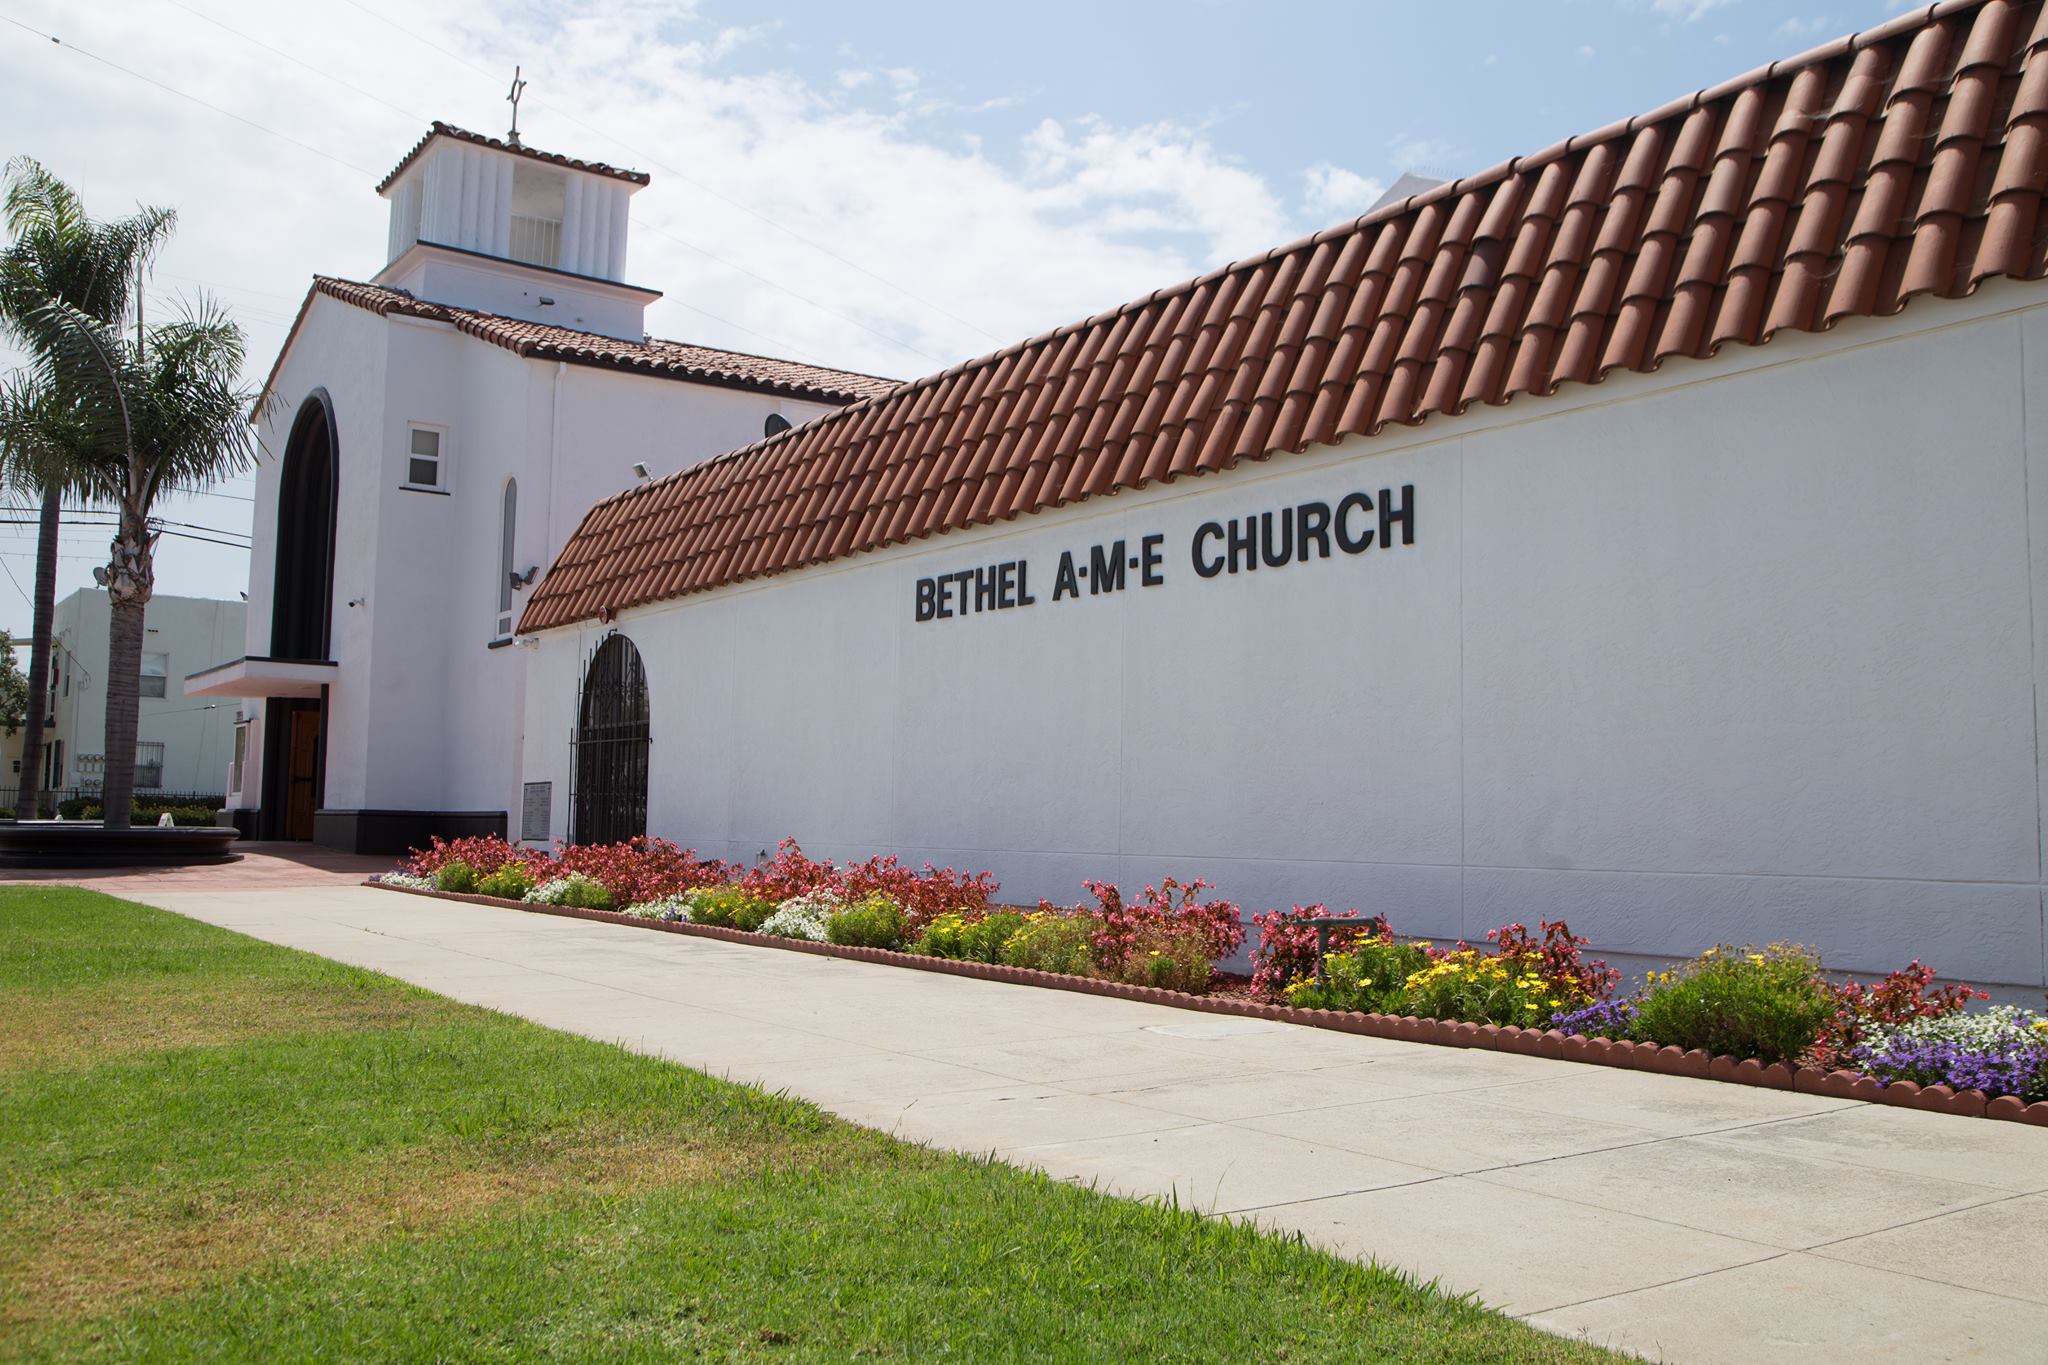 Bethel A.M.E Church